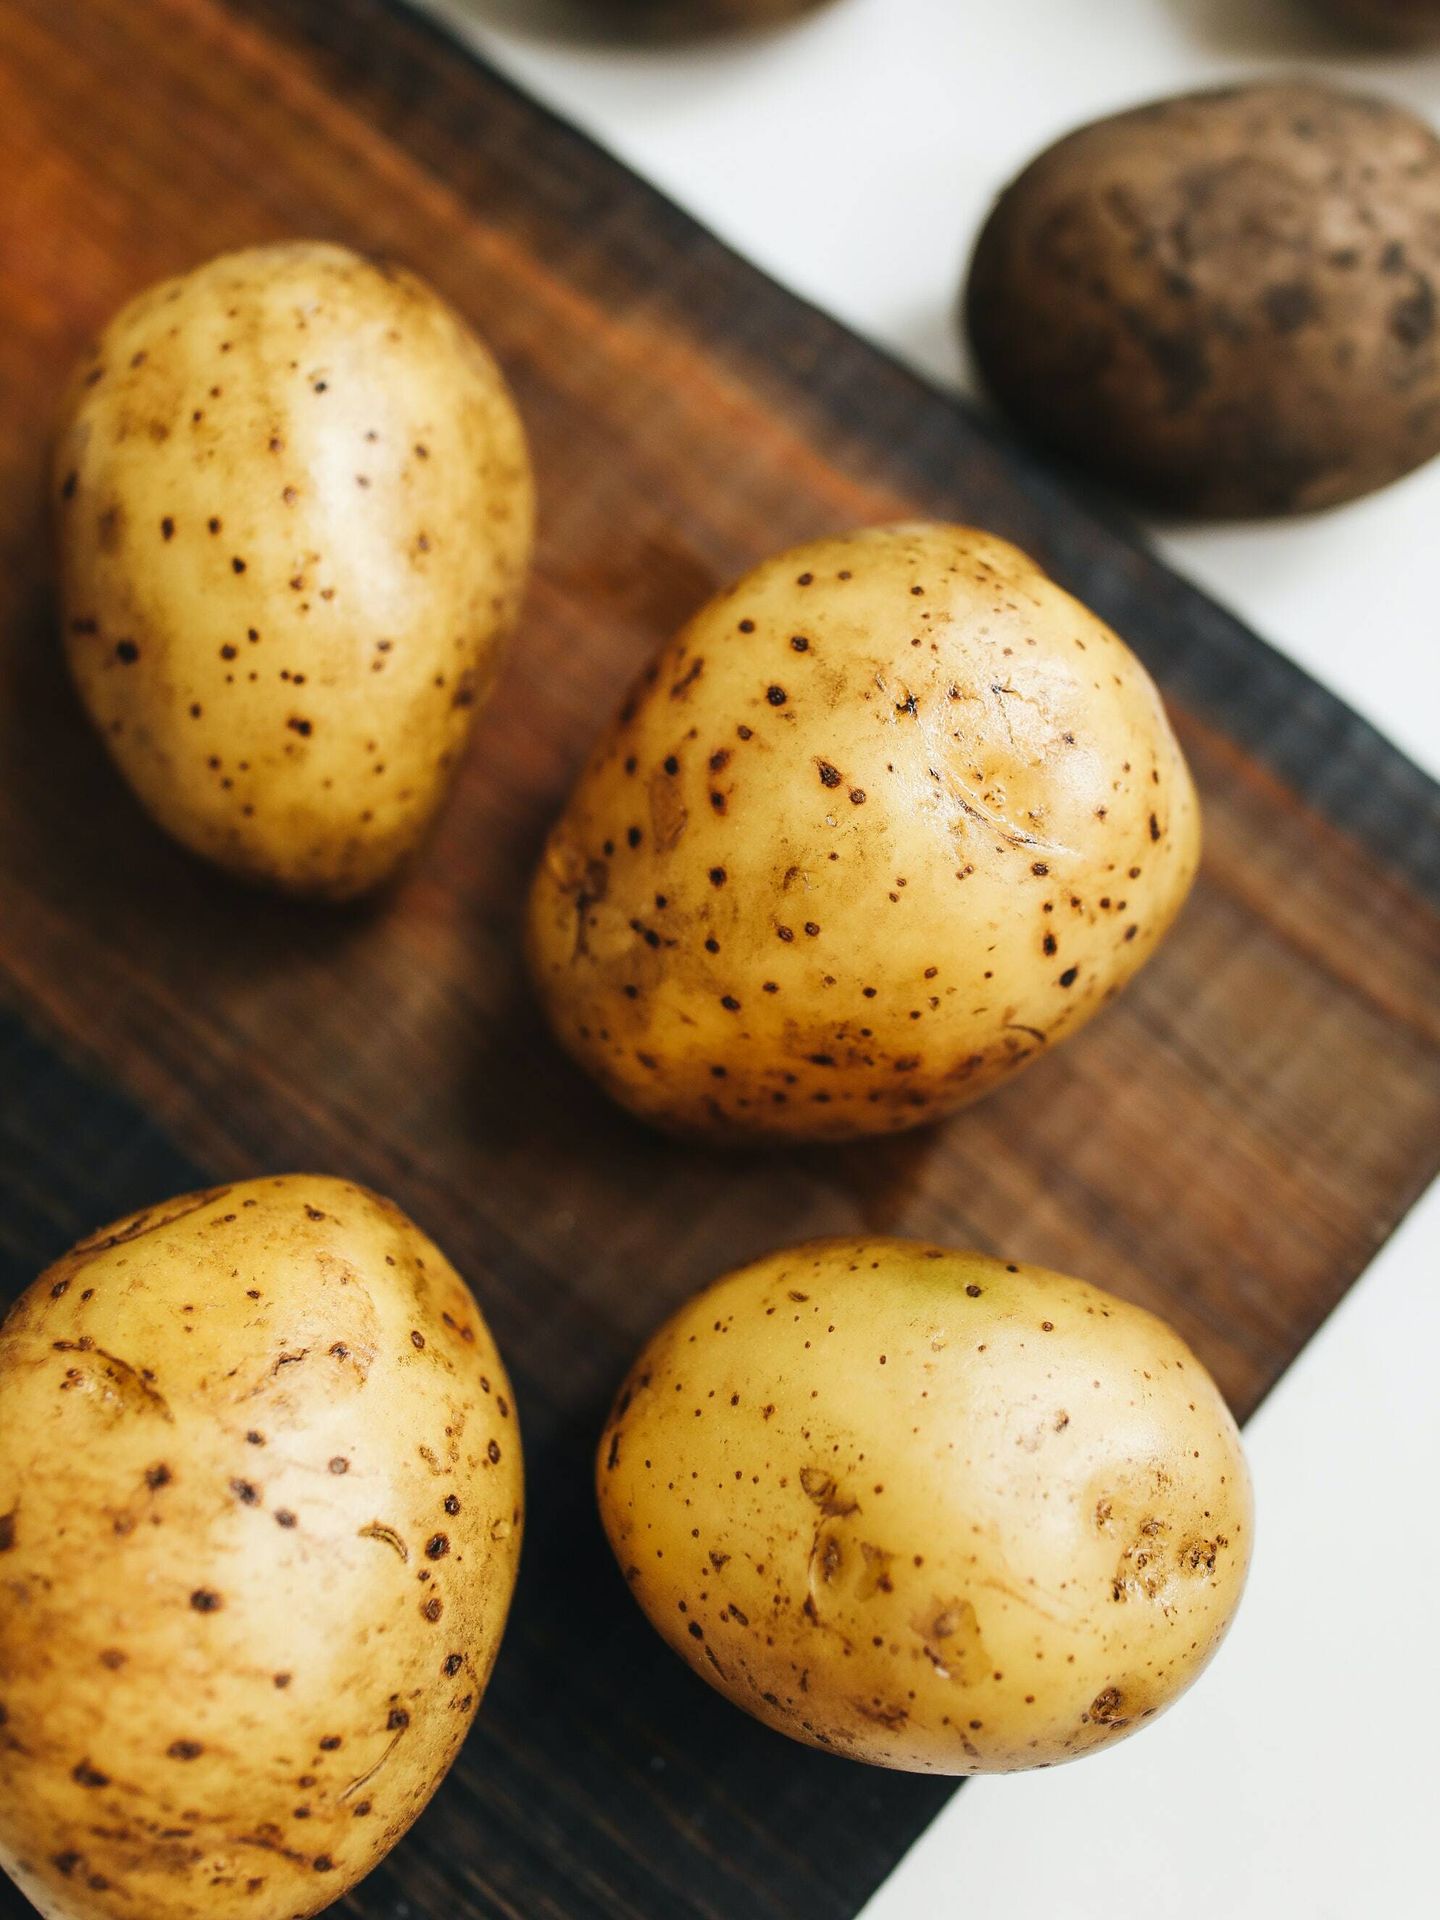 Hay muchas formas de preparar las patatas de forma saludable. (Pexels/ Polina Tankilevitch)